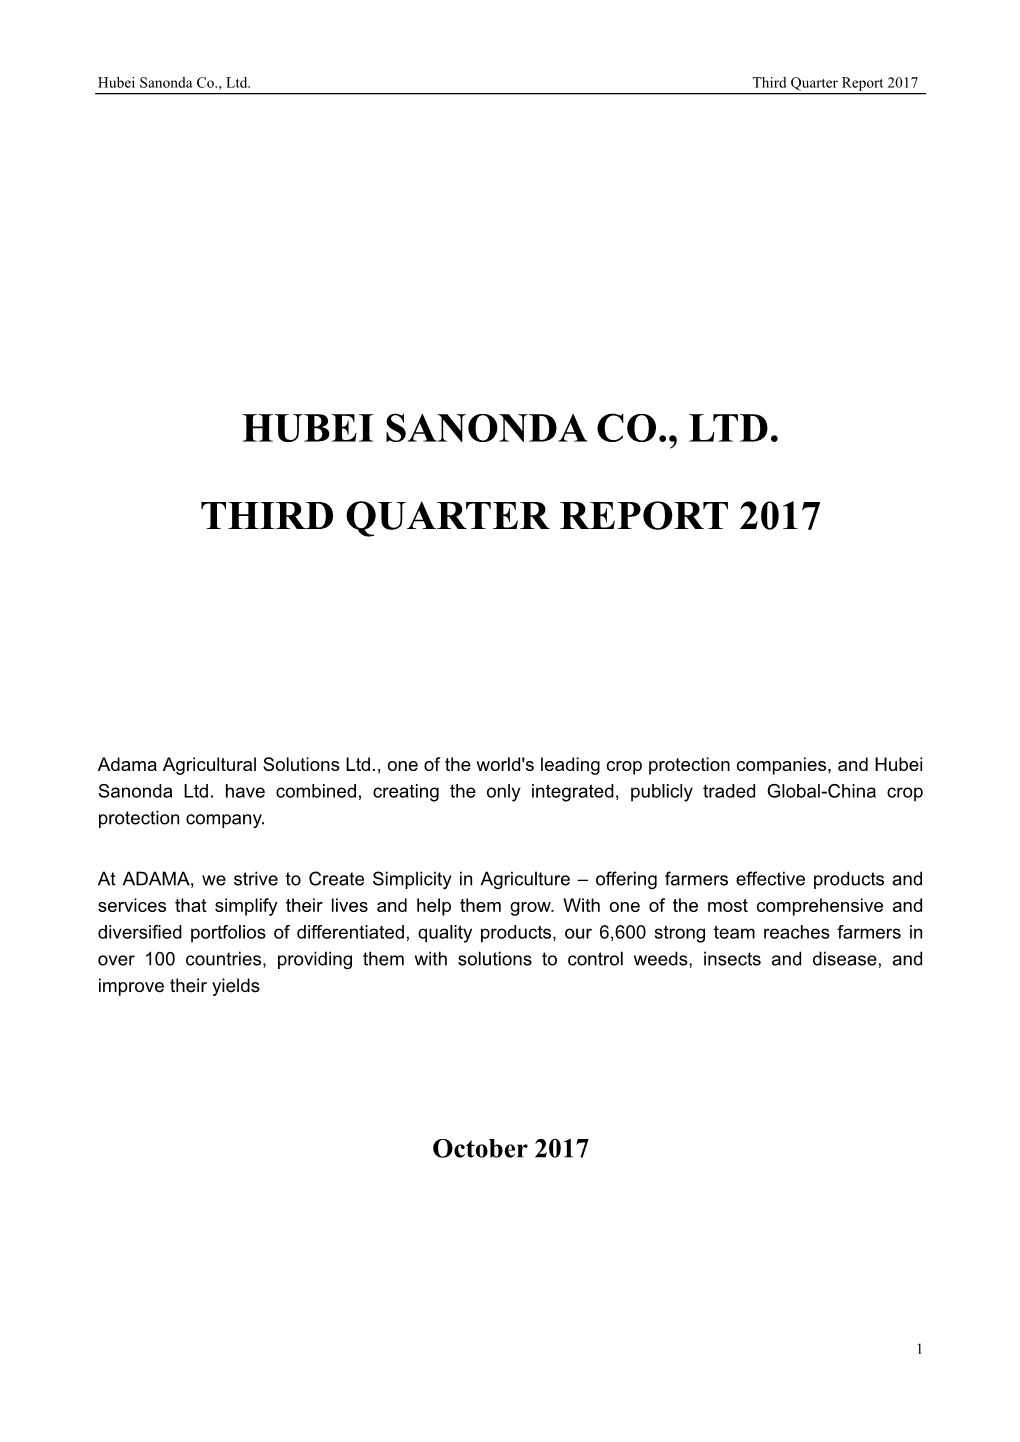 Hubei Sanonda Co., Ltd. Third Quarter Report 2017